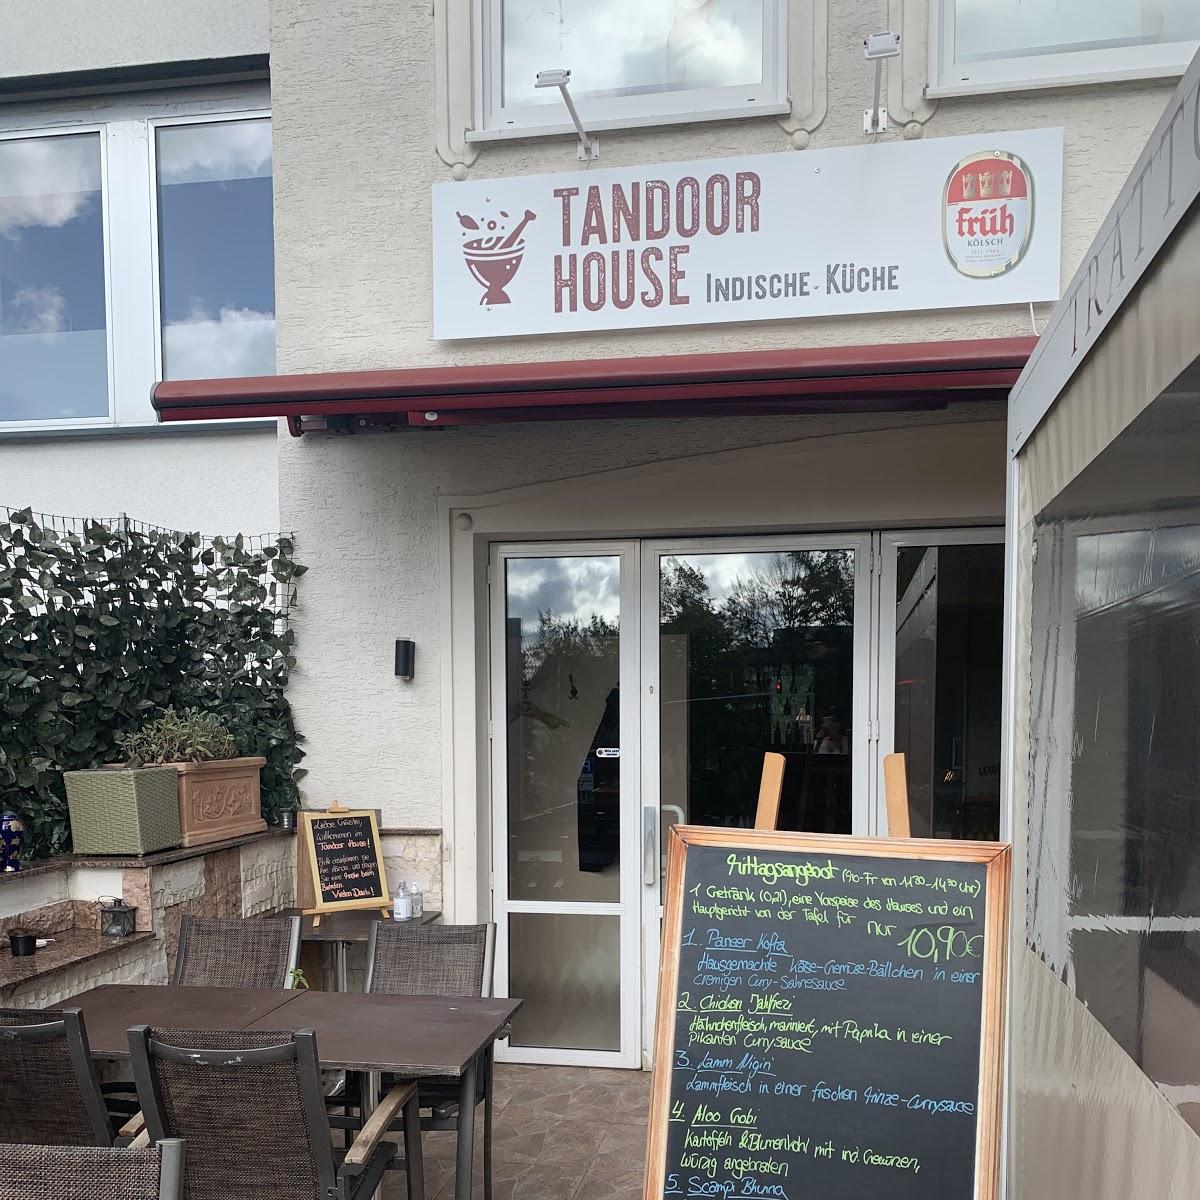 Restaurant "Tandoor House" in Bergisch Gladbach